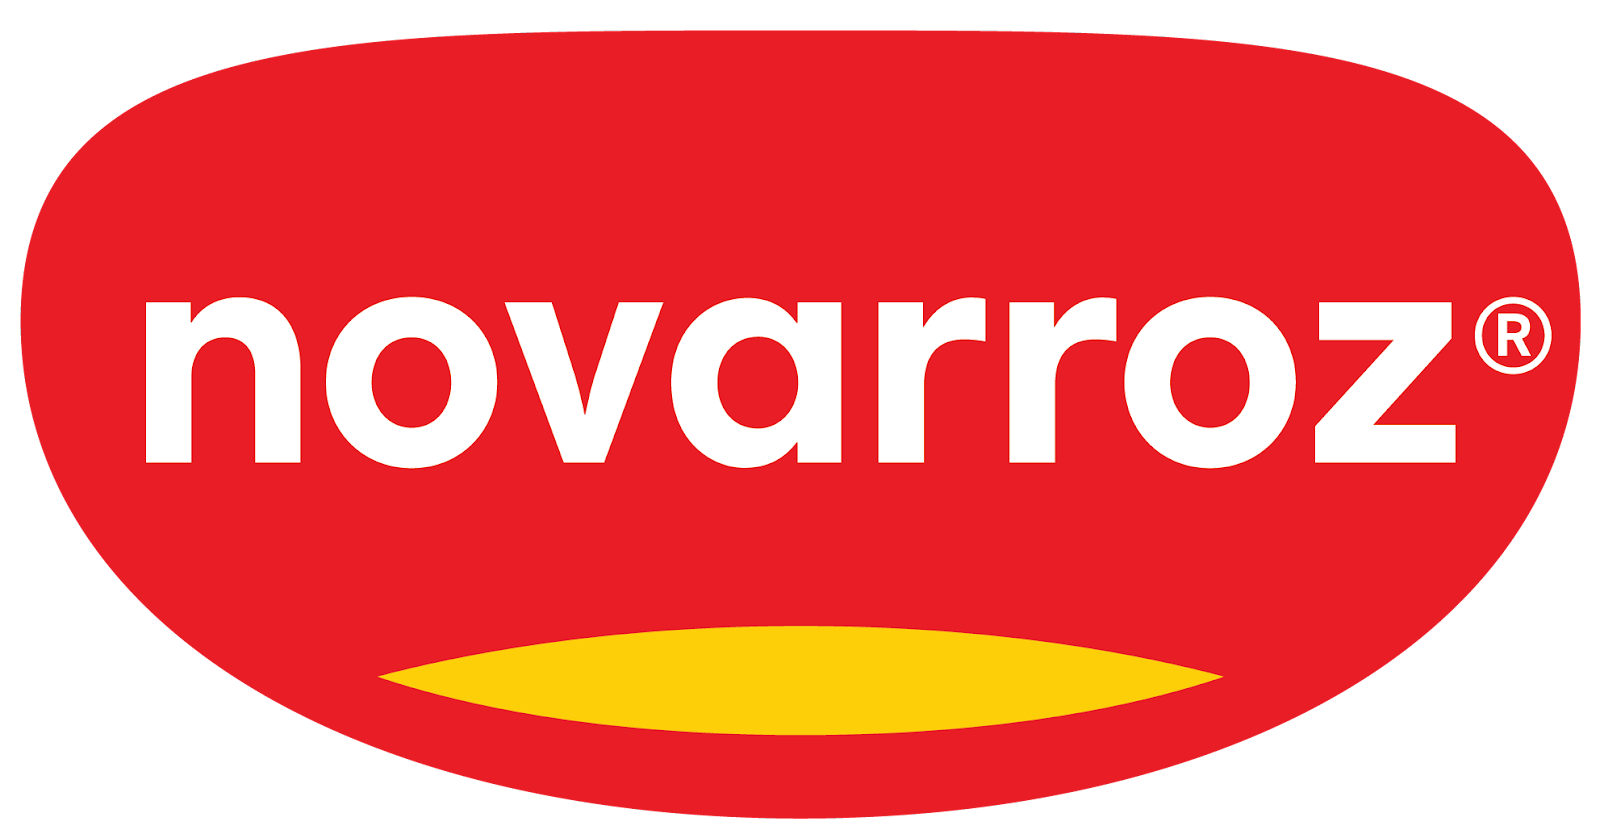 Novarroz – Produtos Alimentares S.A.